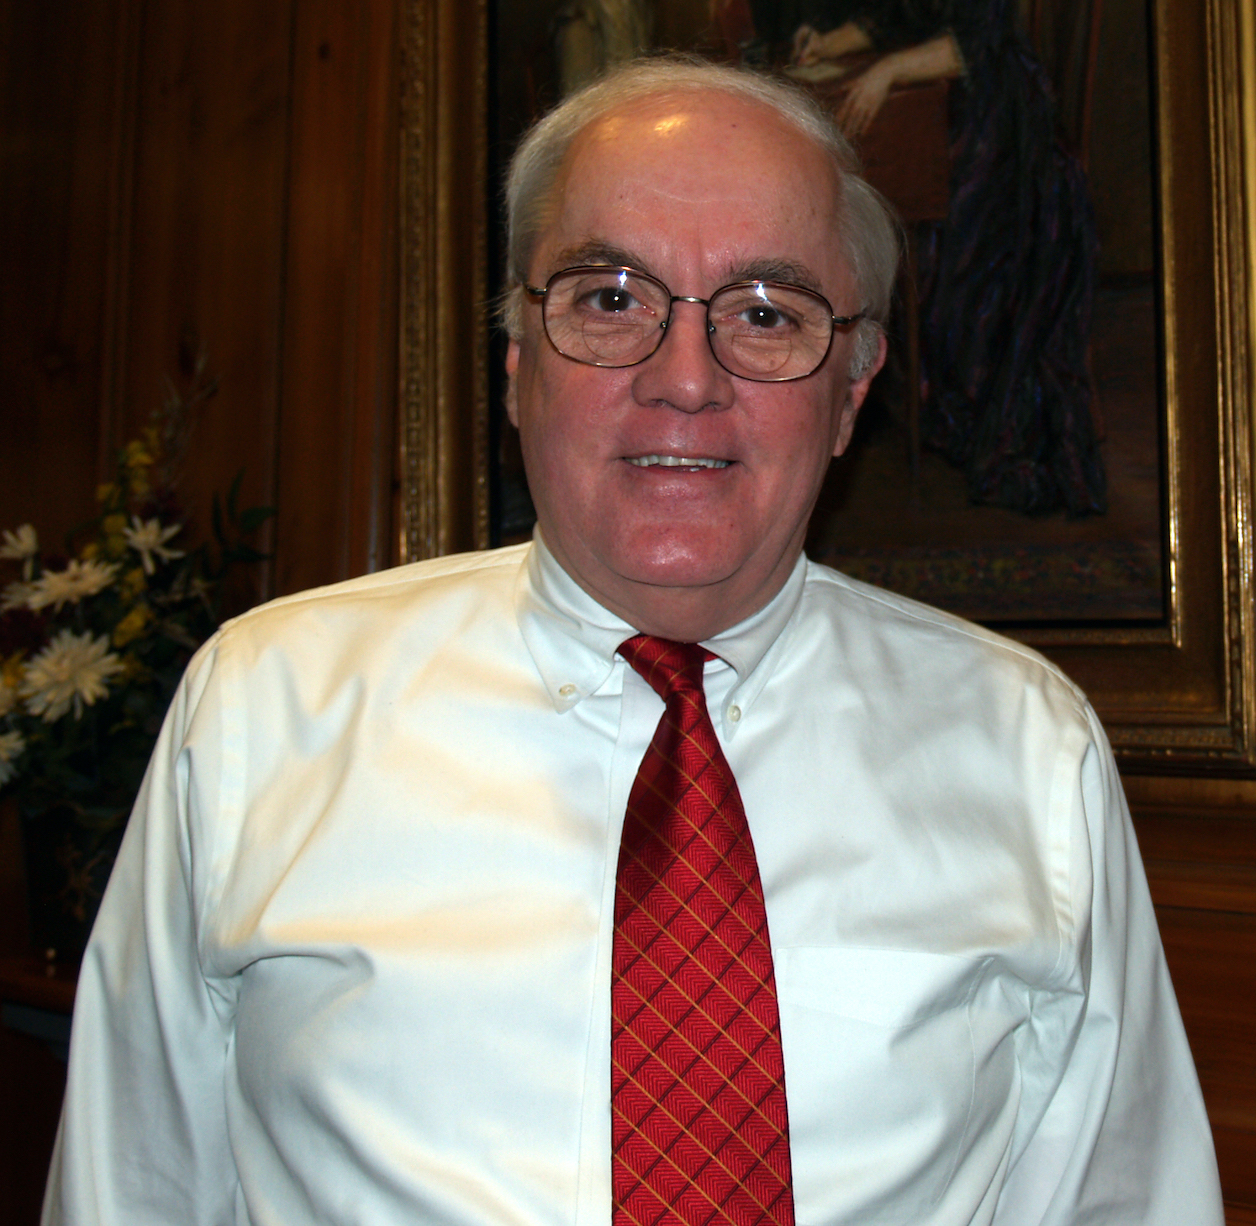 Gil Smith Named 2007 Batley Award Recipient